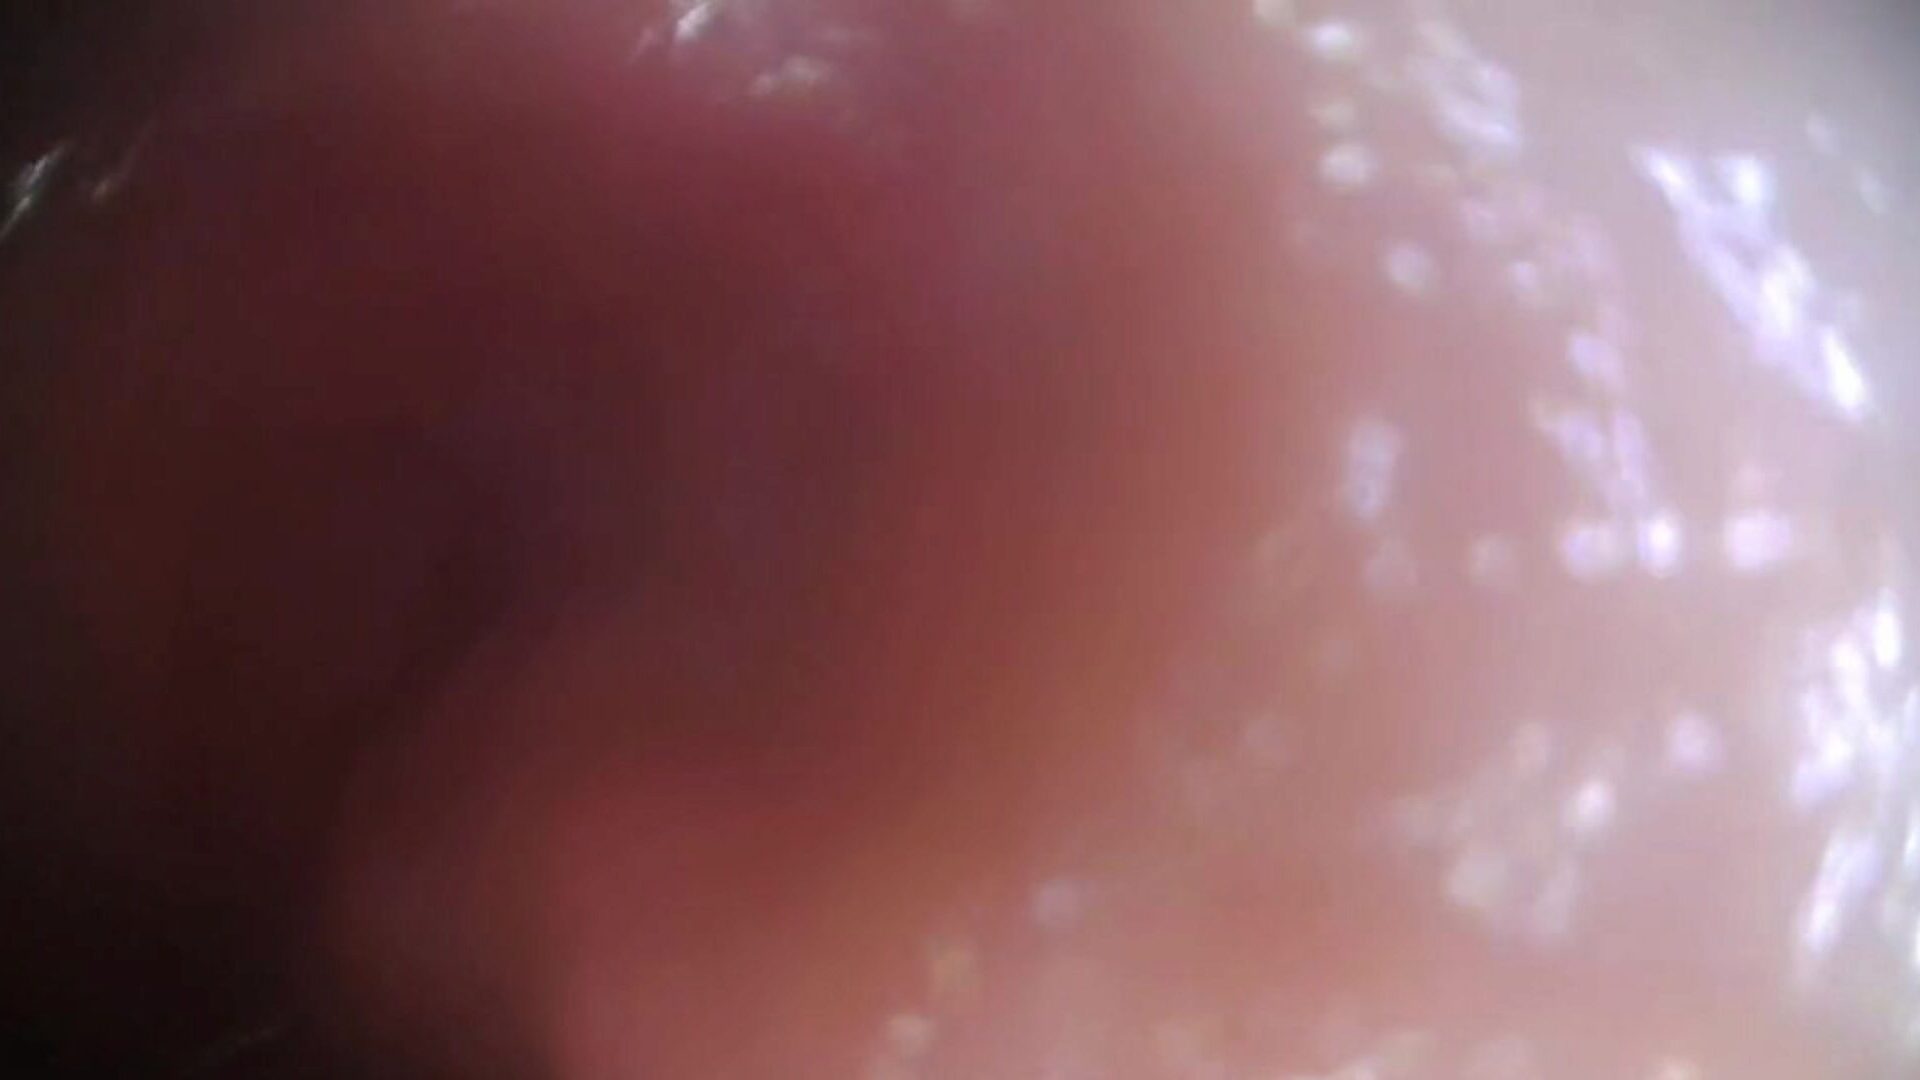 cámara de semen real hacia adentro del coño - video completo original